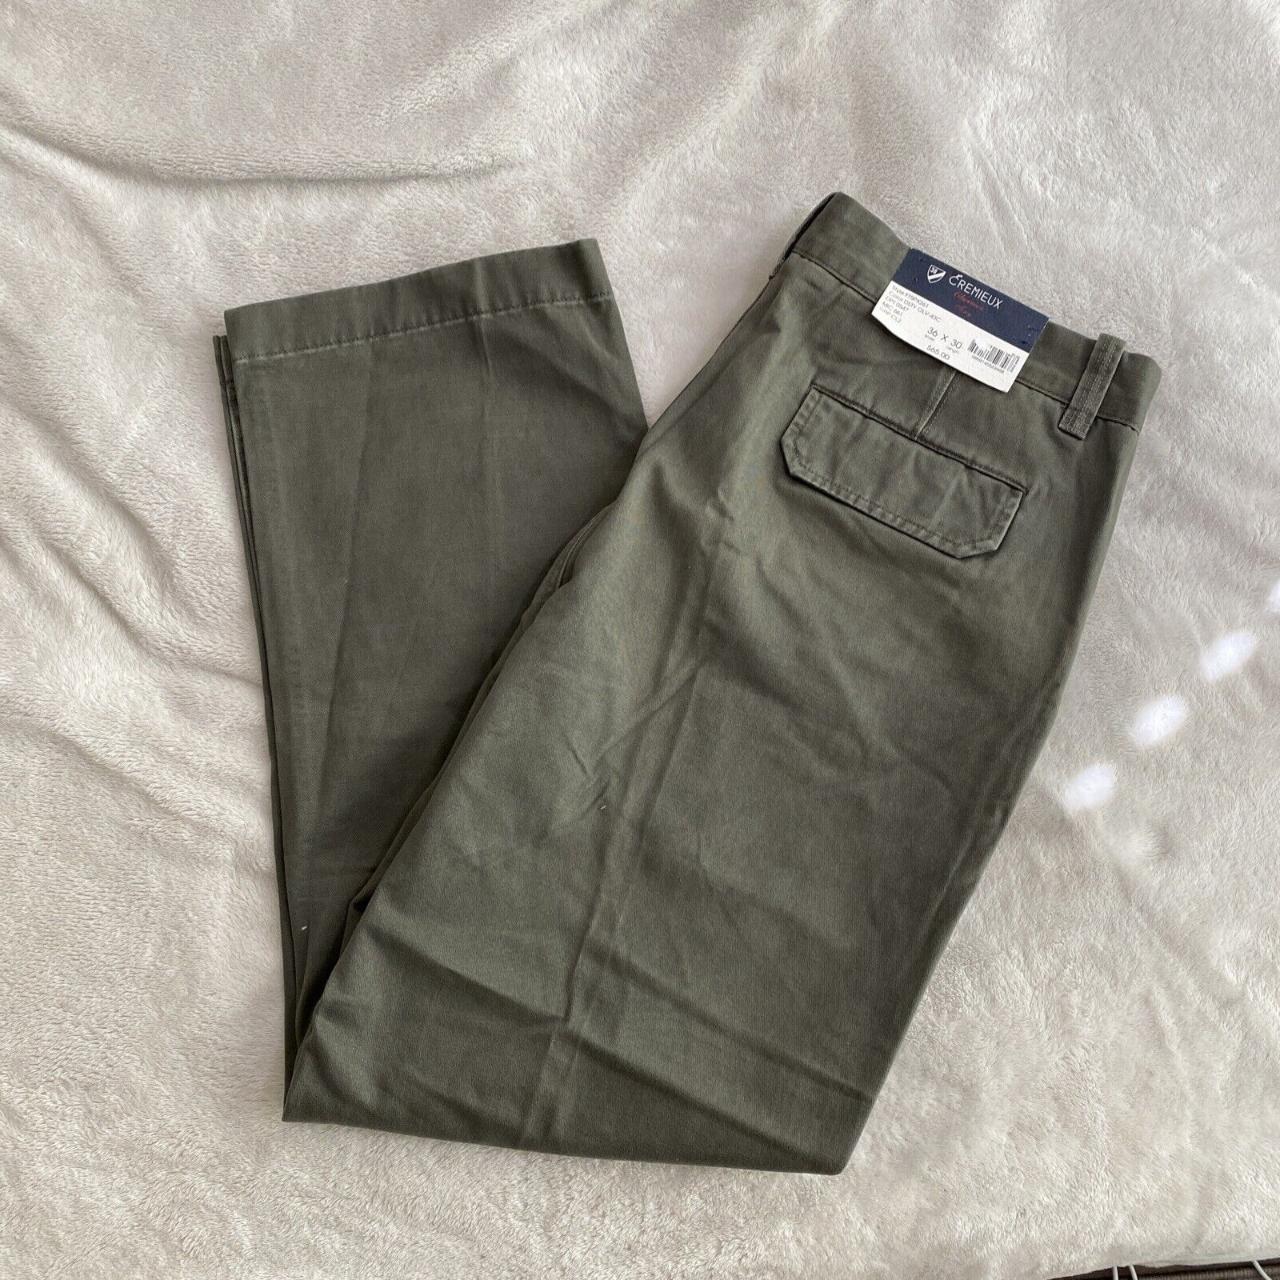 Daniel Cremieux Flat-Front Dress Pants Pants for Men